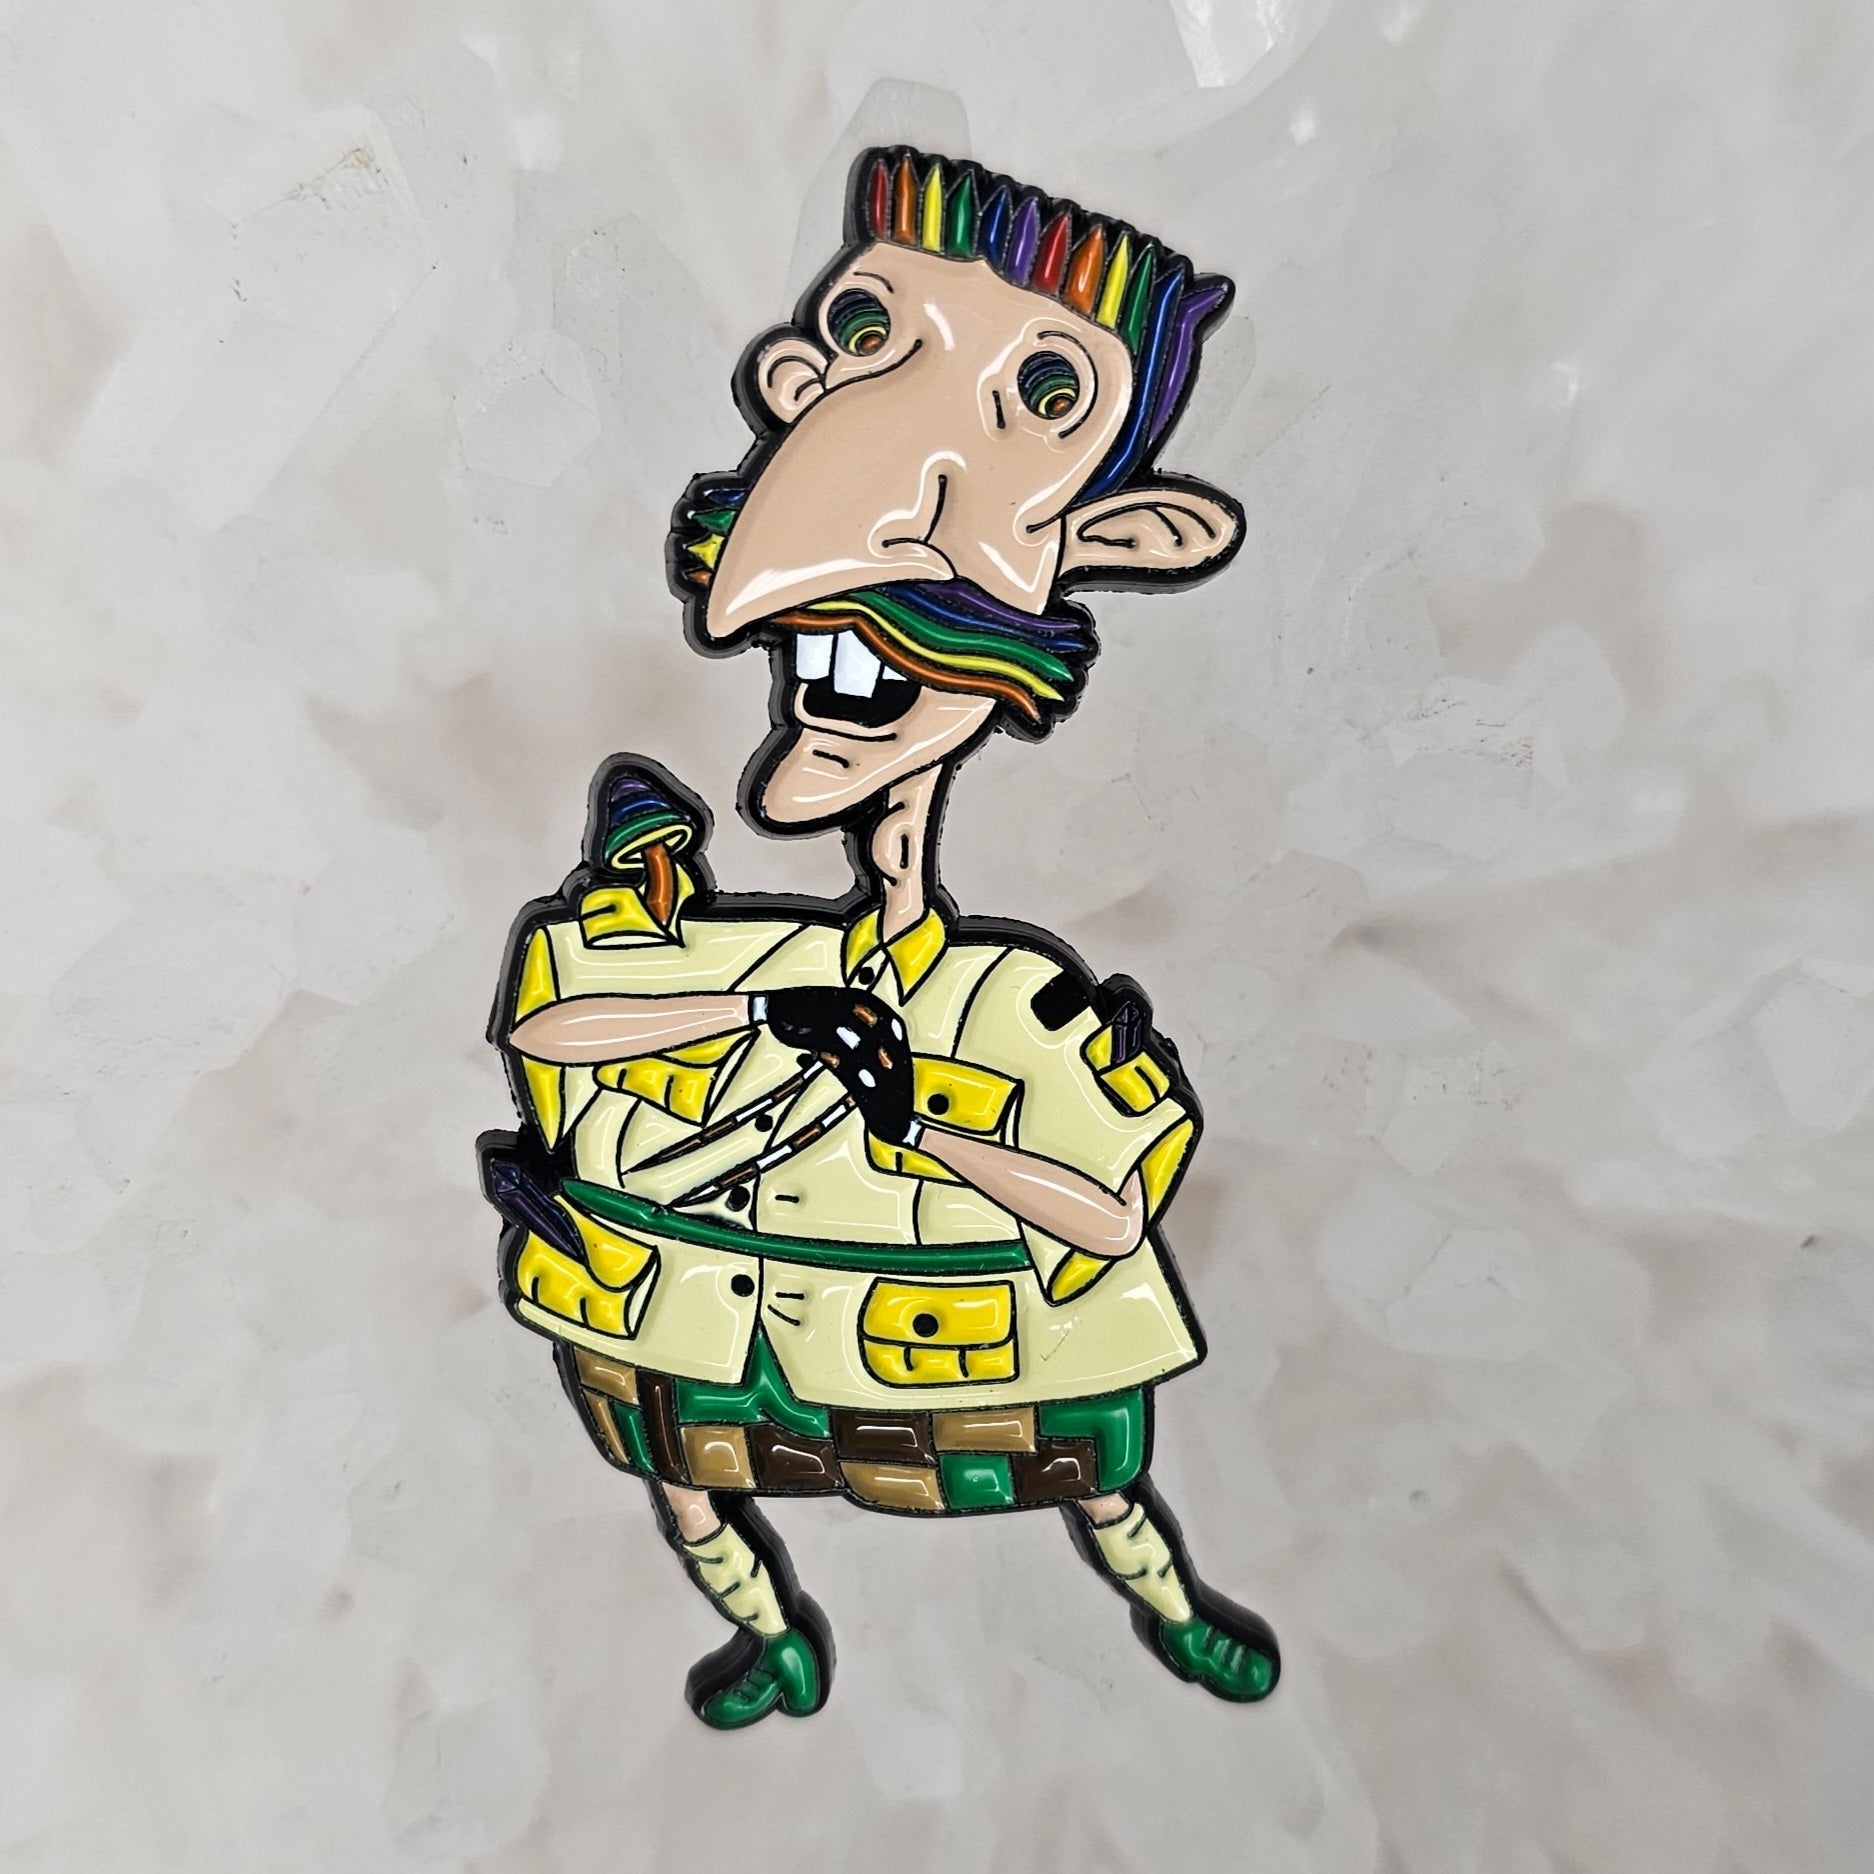 10 Pack - Festie Freak Nigel Thornberry 90s Cartoon Gloving Flow Enamel Pins Hat Pins Bulk Lapel Pin Brooch Badge Festival Pin